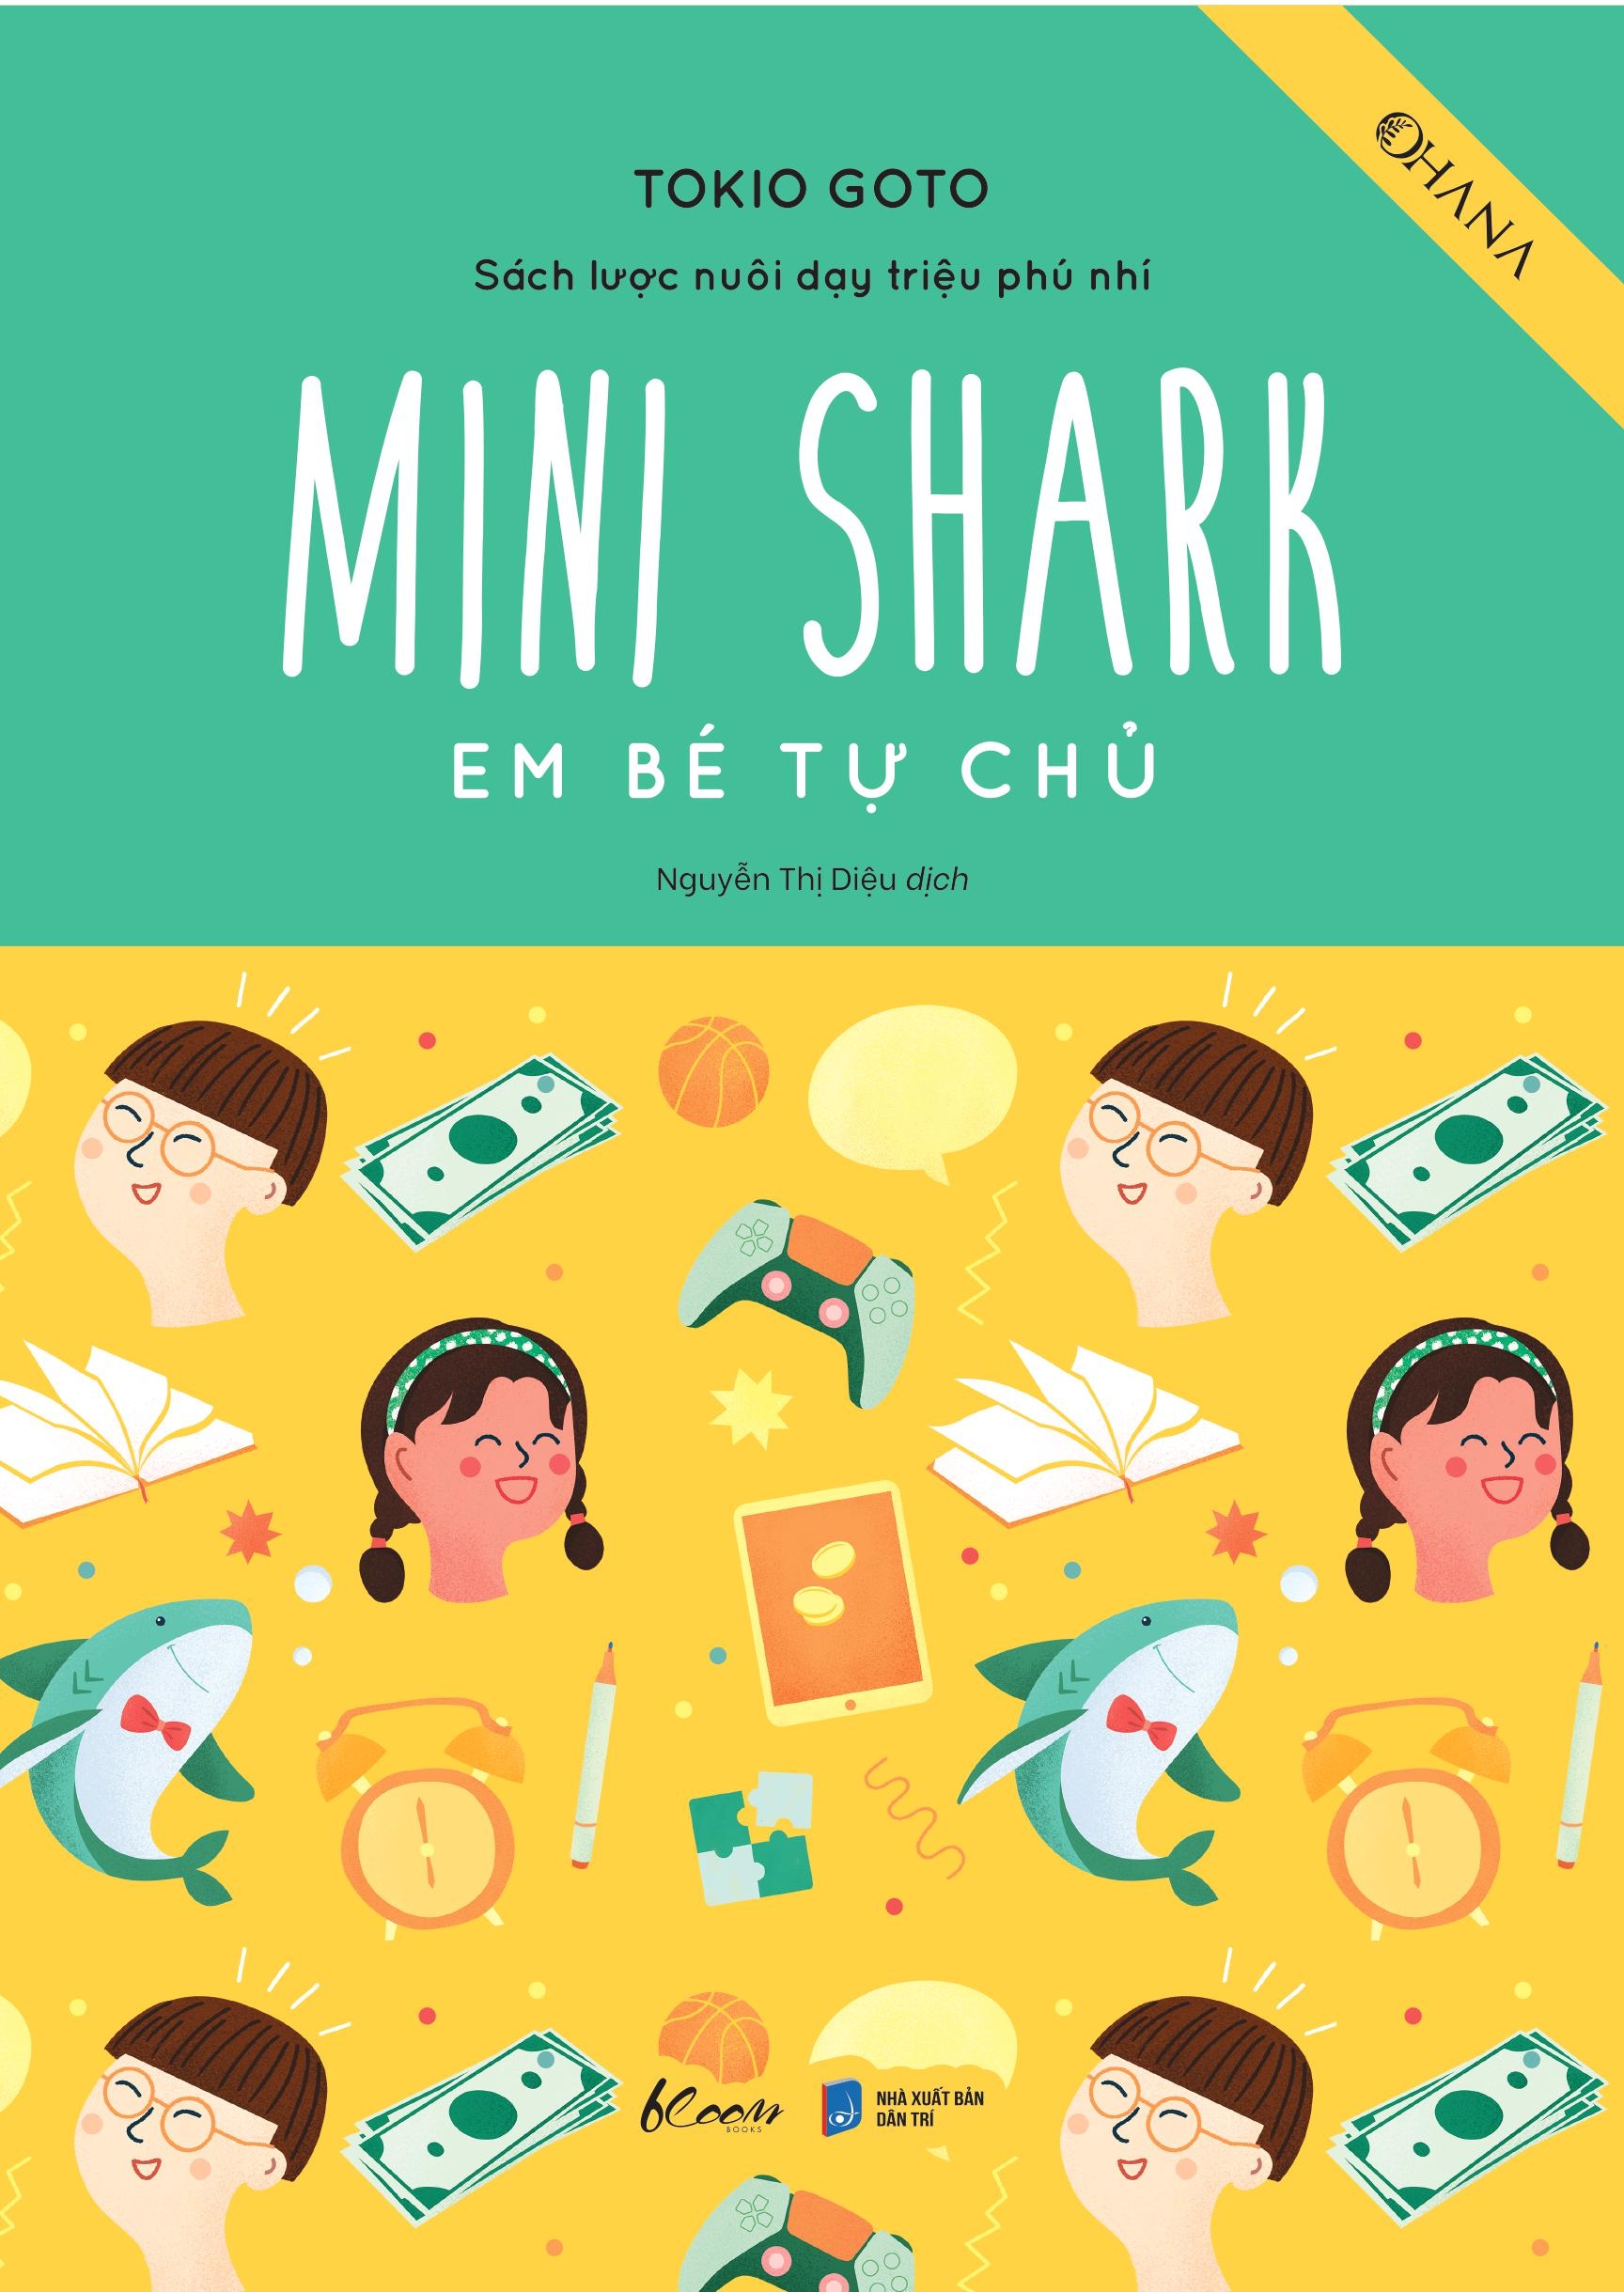 Sách Lược Nuôi Dạy Triệu Phú Nhí - Mini Shark - Em Bé Tự Chủ PDF